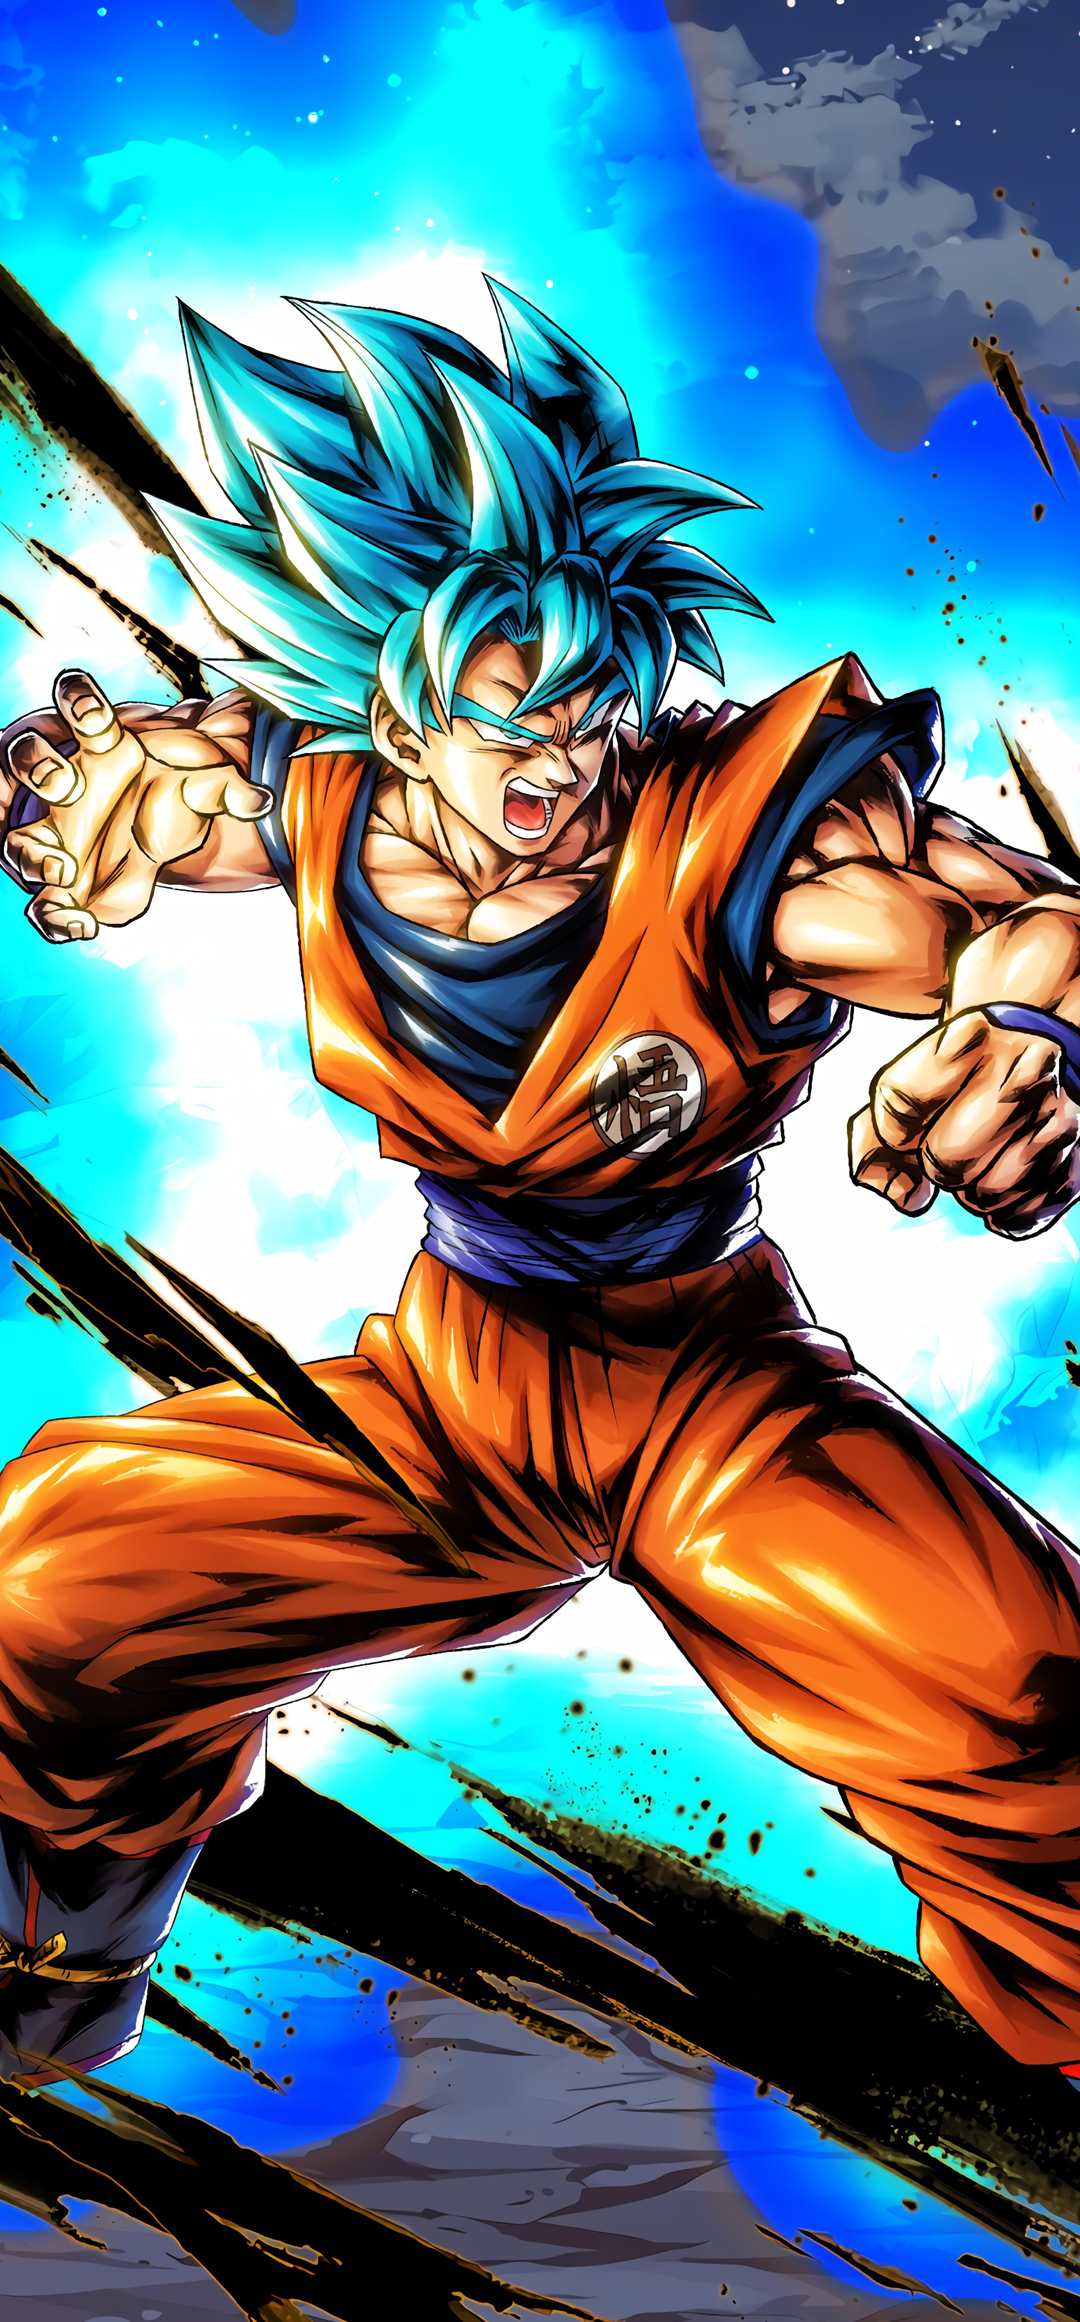 SP Super Saiyan God Goku (Purple)